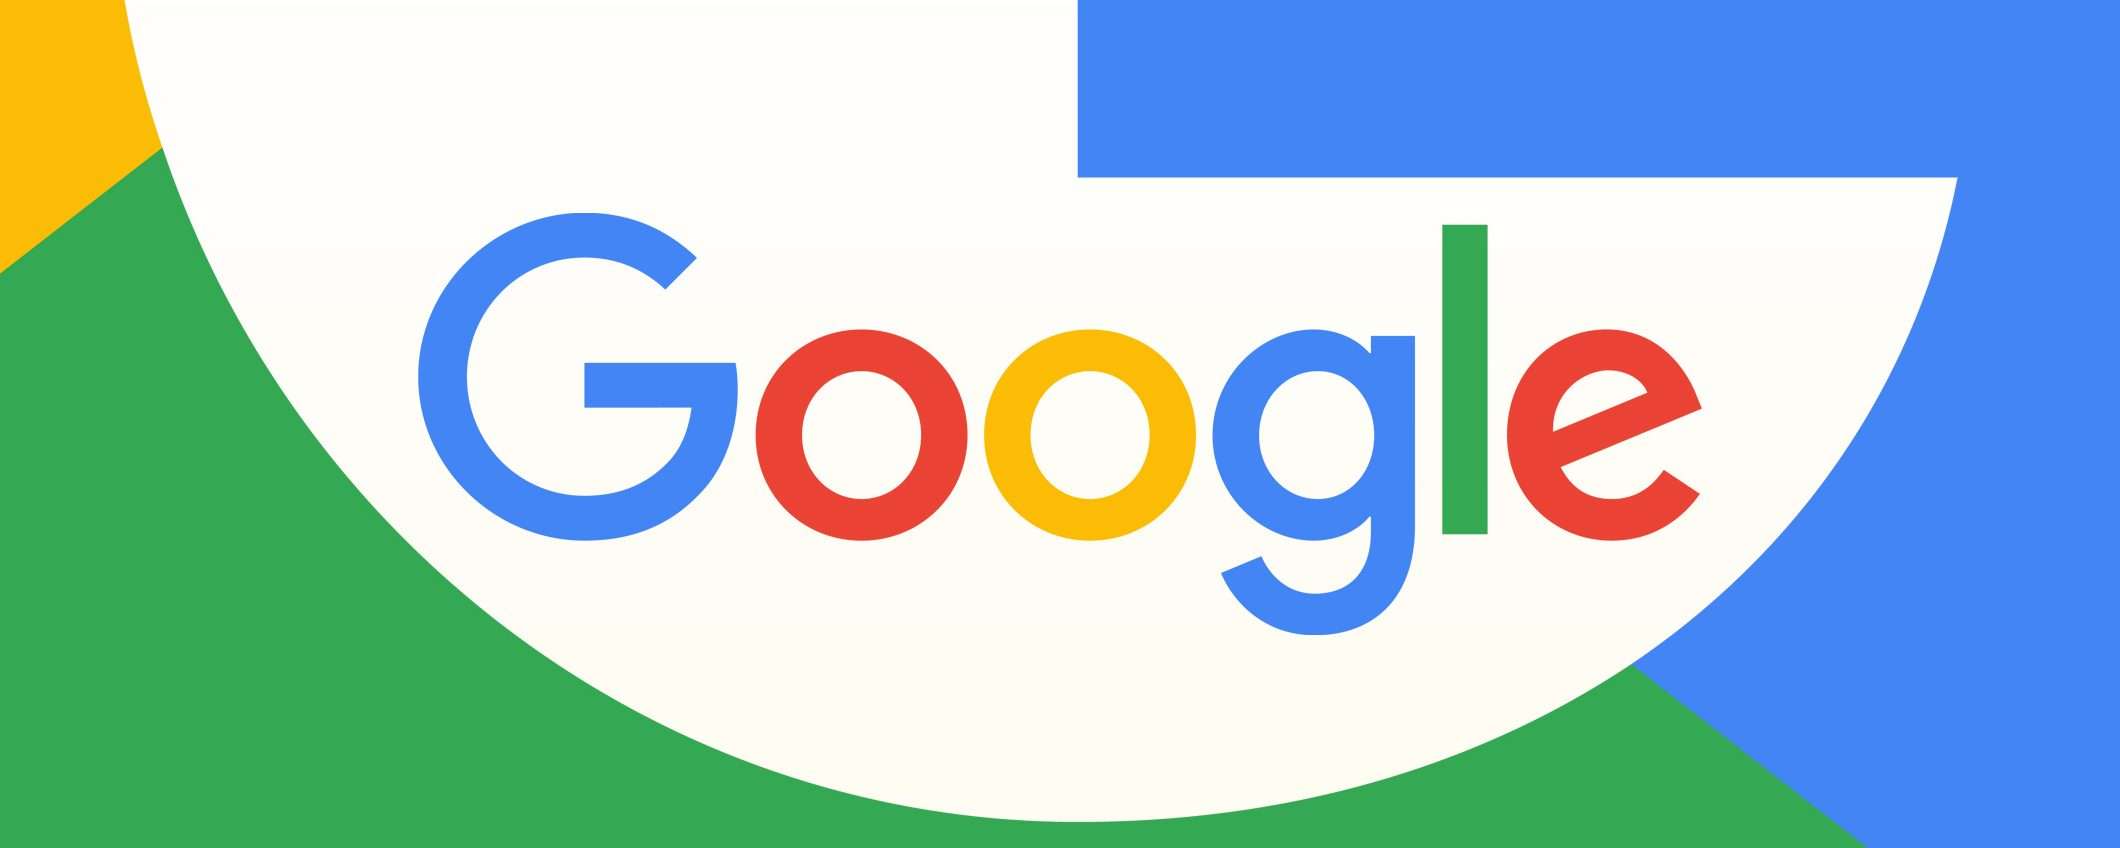 Google eliminerà gli account inattivi dal 1 dicembre